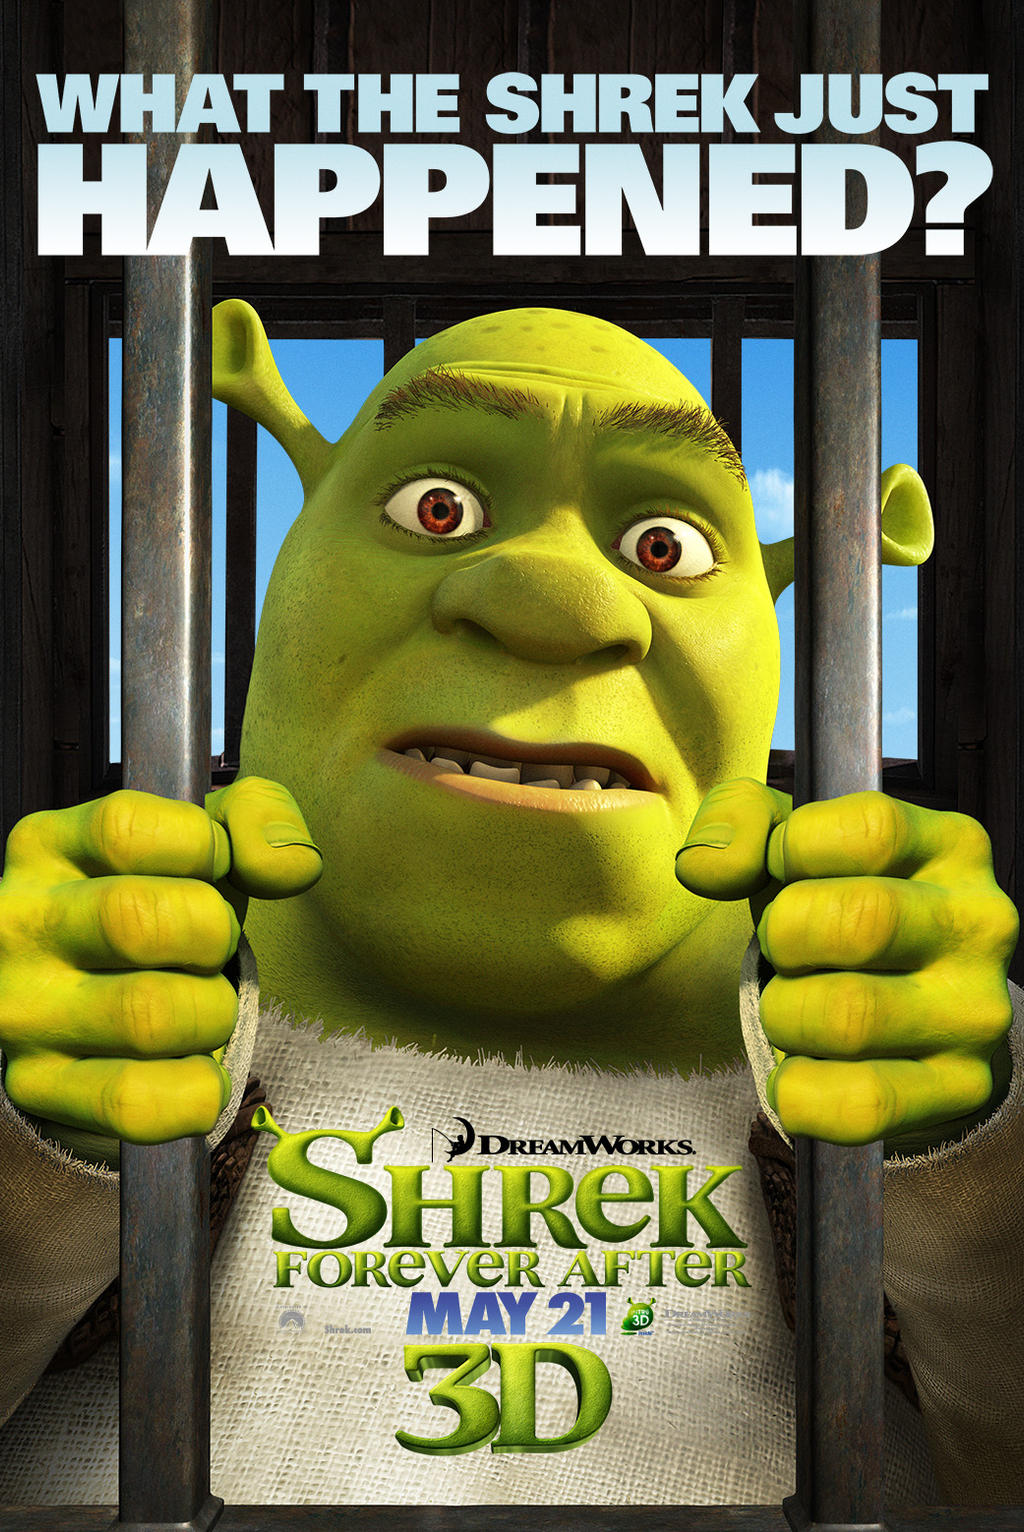 The Green Ogre Returns in 'Shrek Forever After